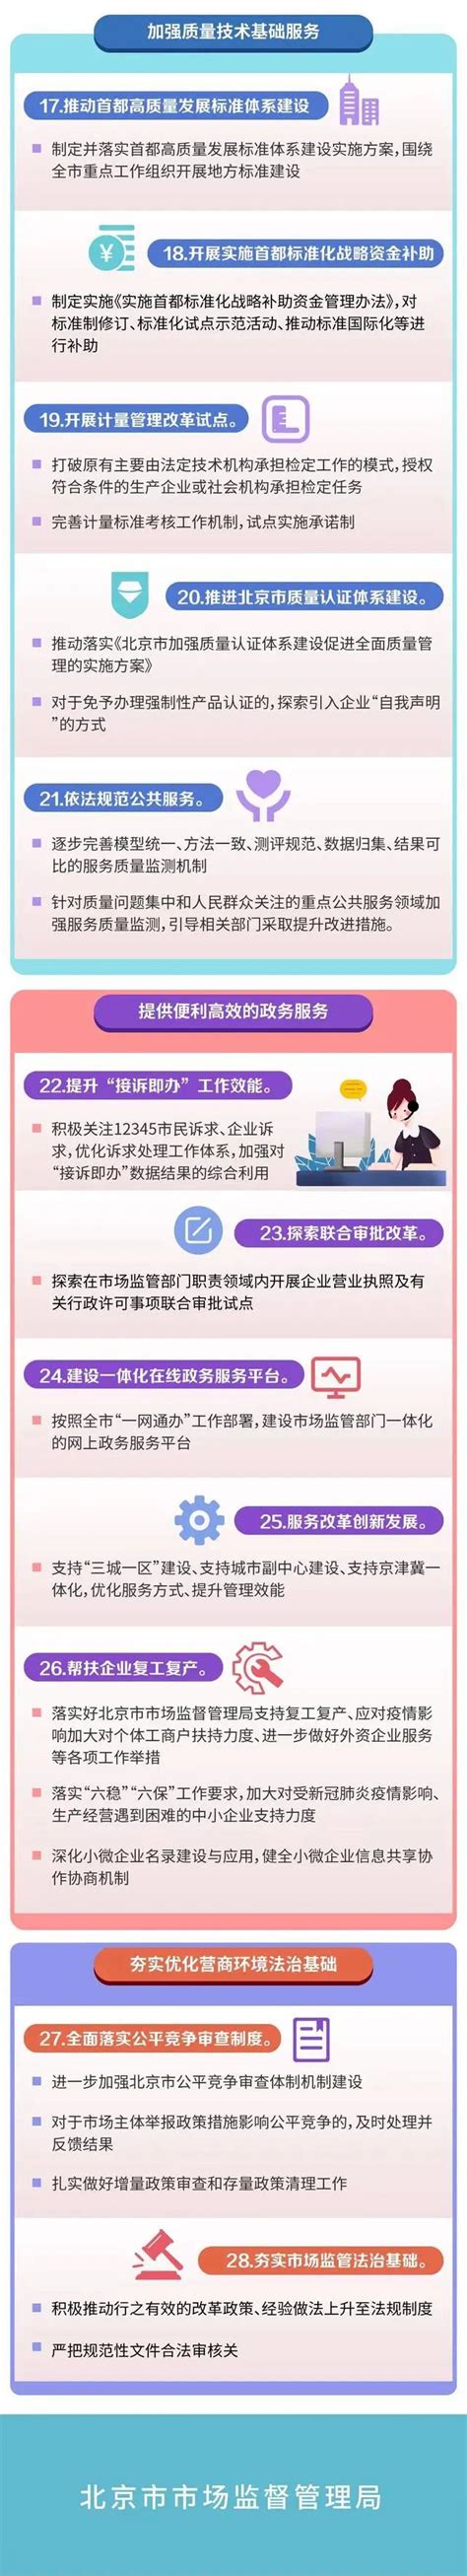 北京市优化营商环境条例修正 - 律科网